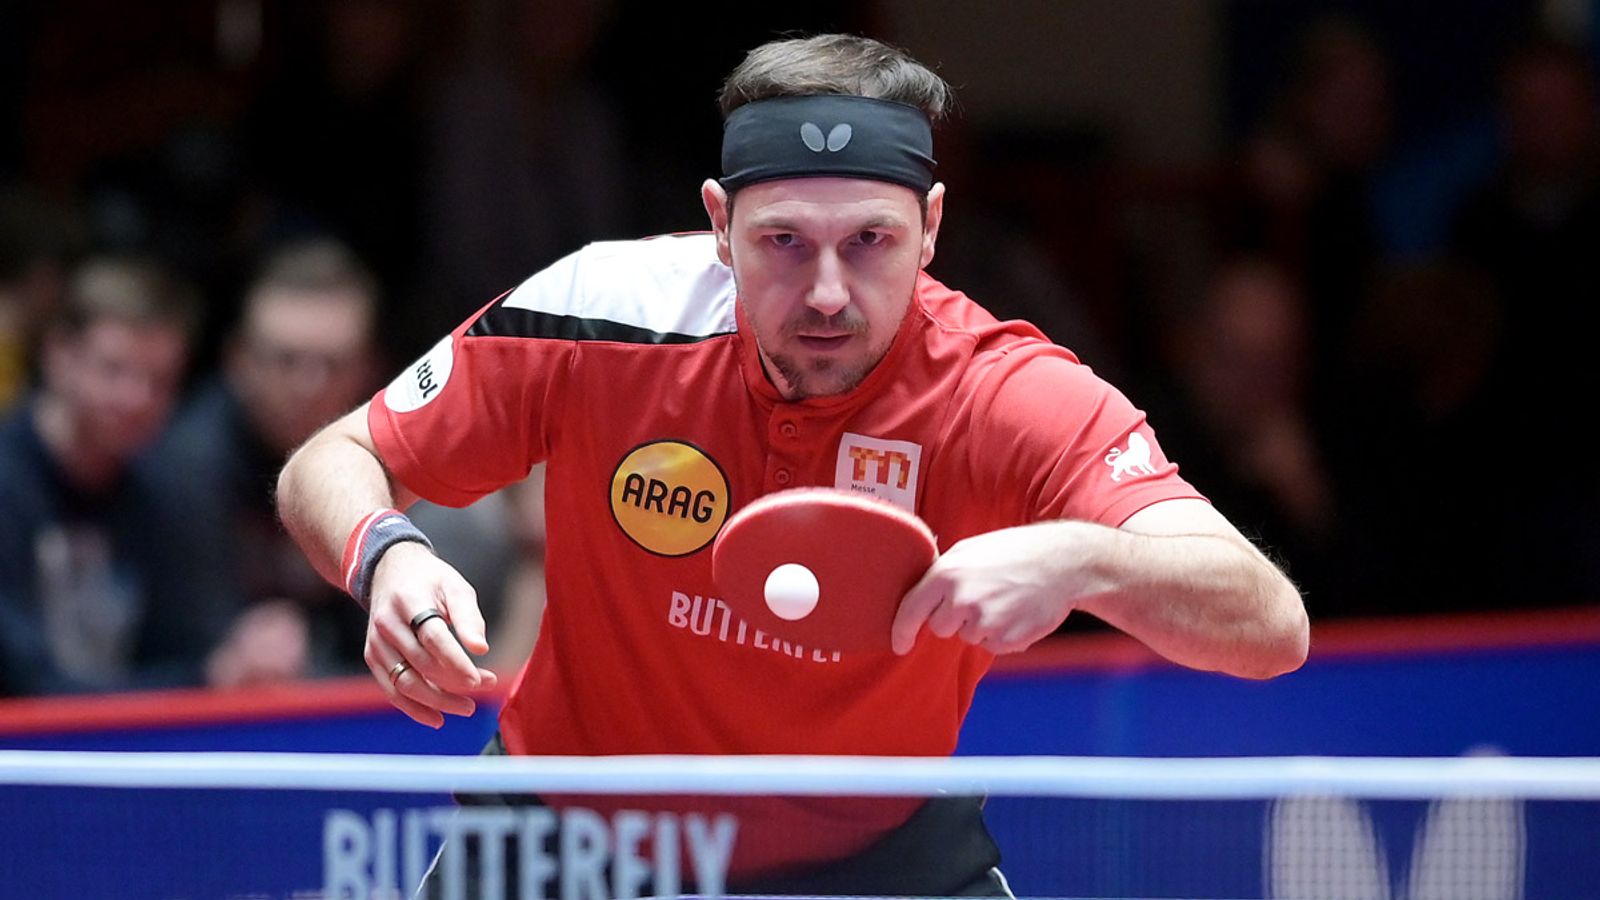 Tischtennis-WM Timo Boll muss verletzt absagen Mehr Sport News Sky Sport